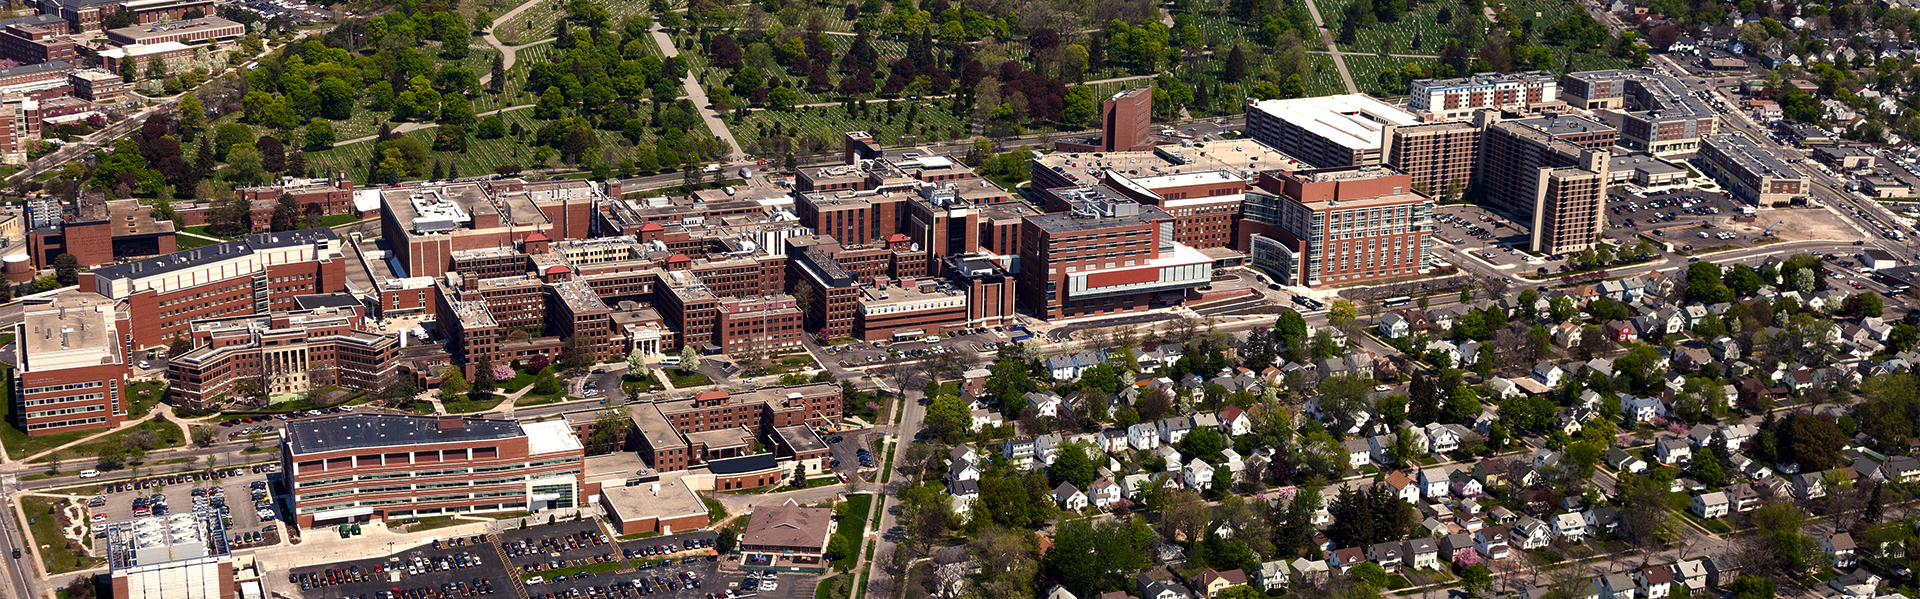 Aerial view of URMC campus